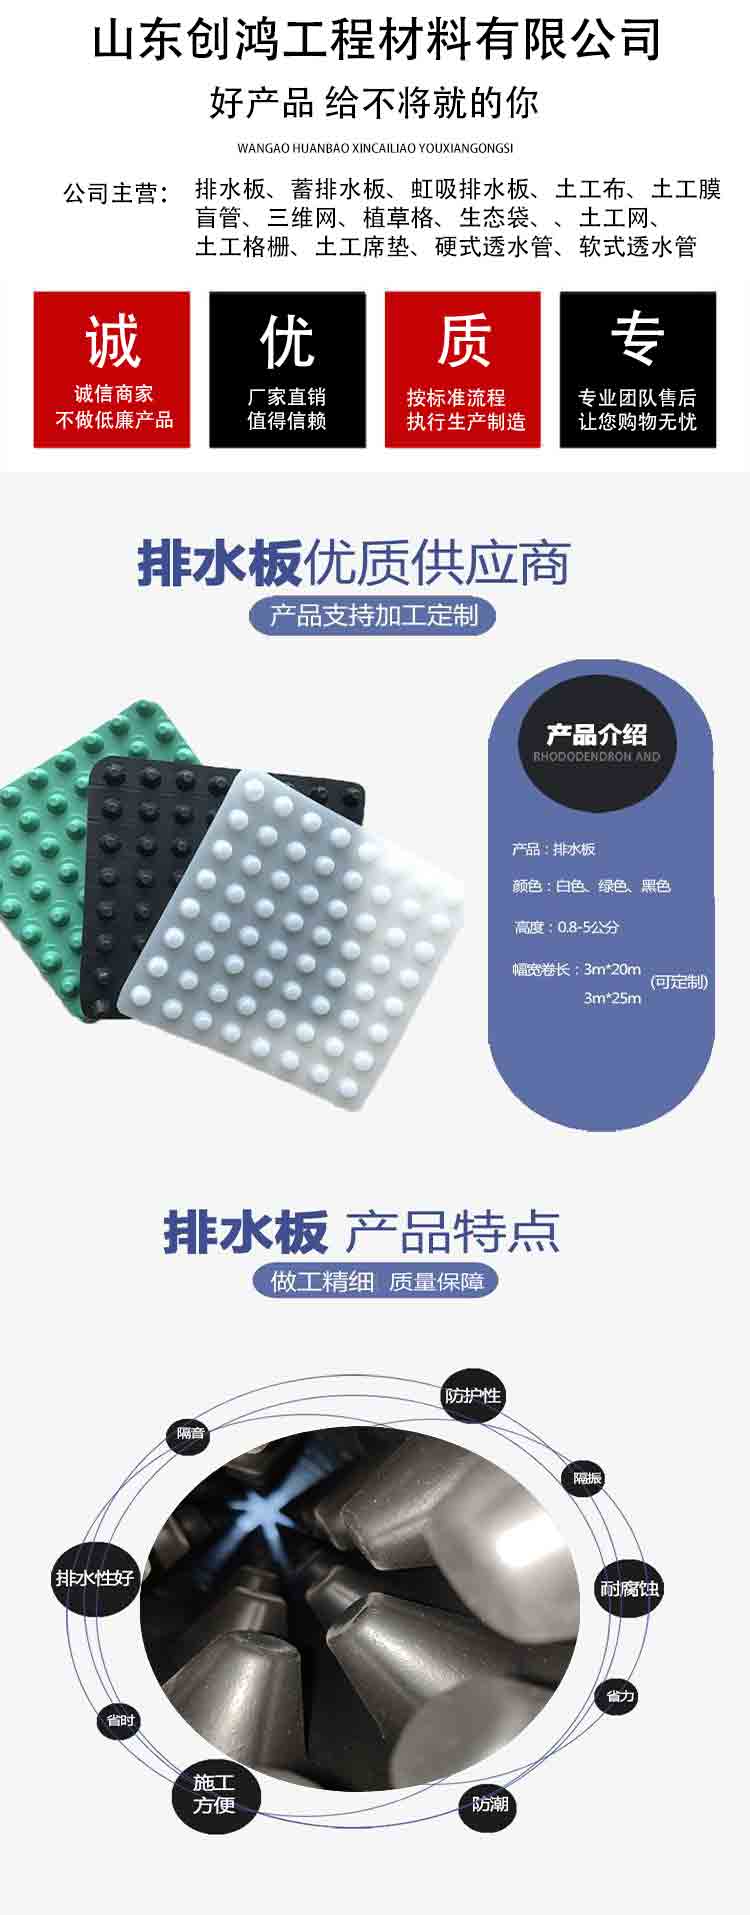 欢迎访问郑州-塑料排水板郑州-有限公司